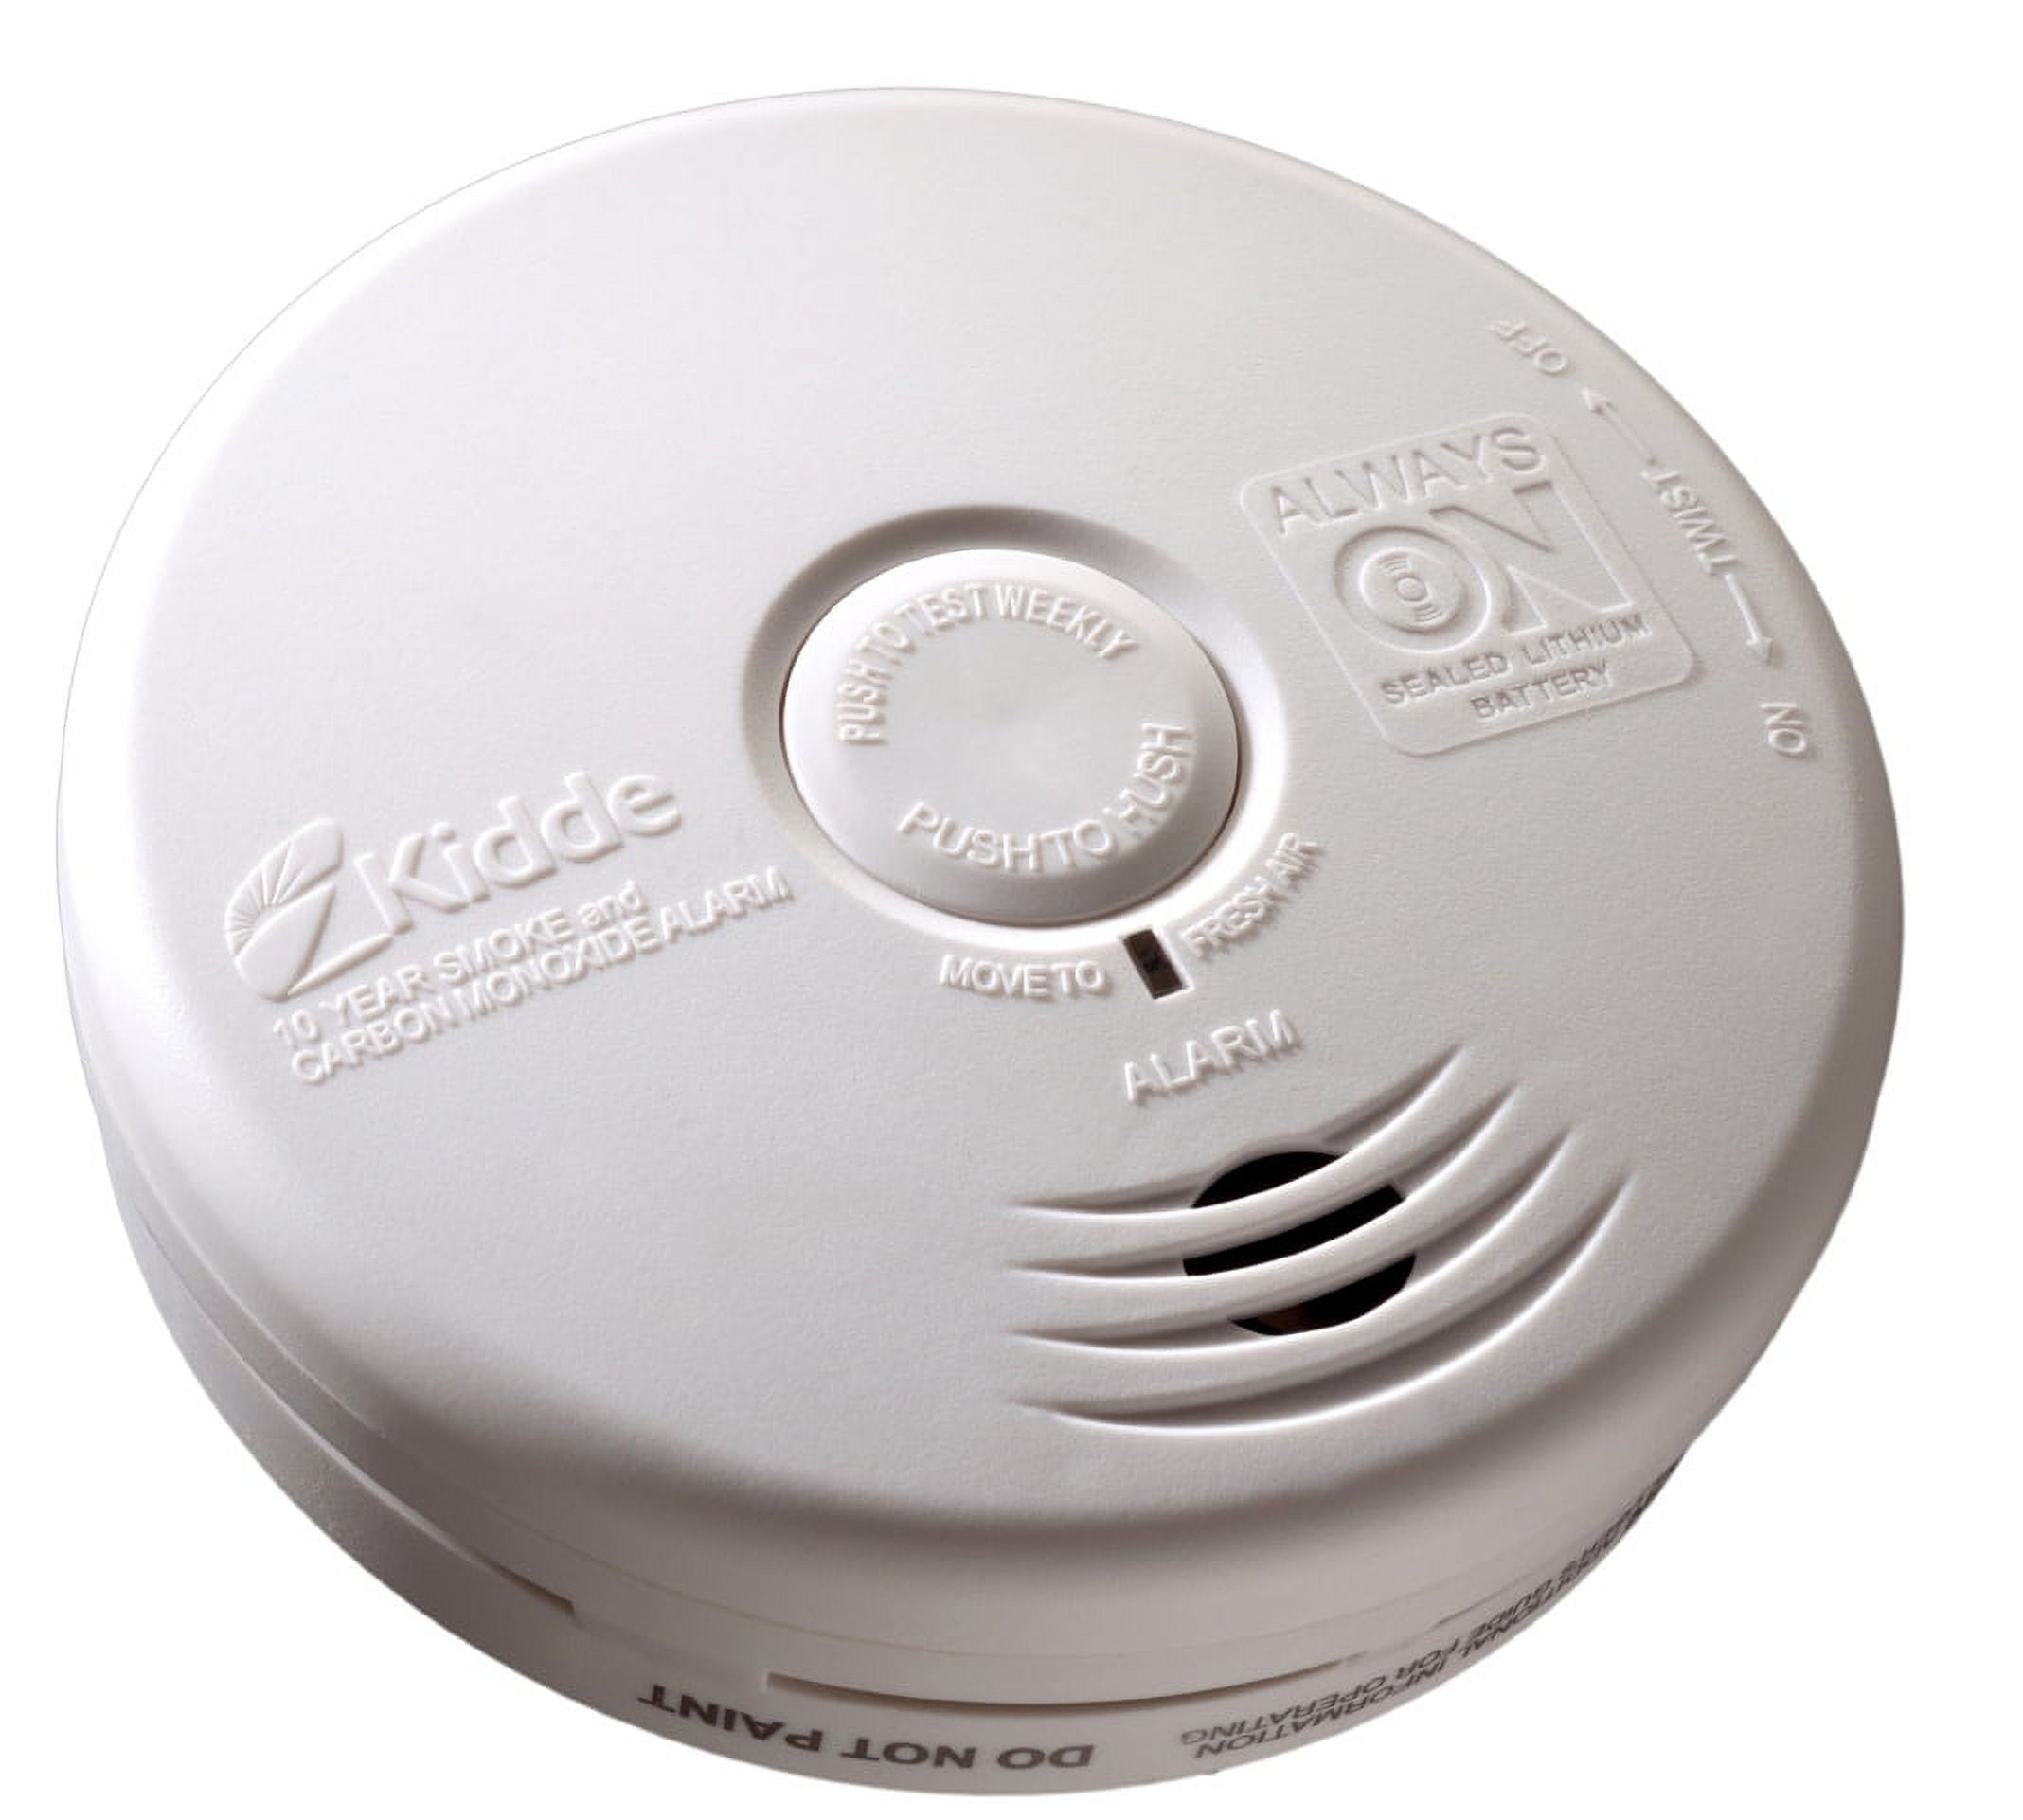 Kidde 21010170 10 Year Kitchen Smoke & Carbon Monoxide Detector 